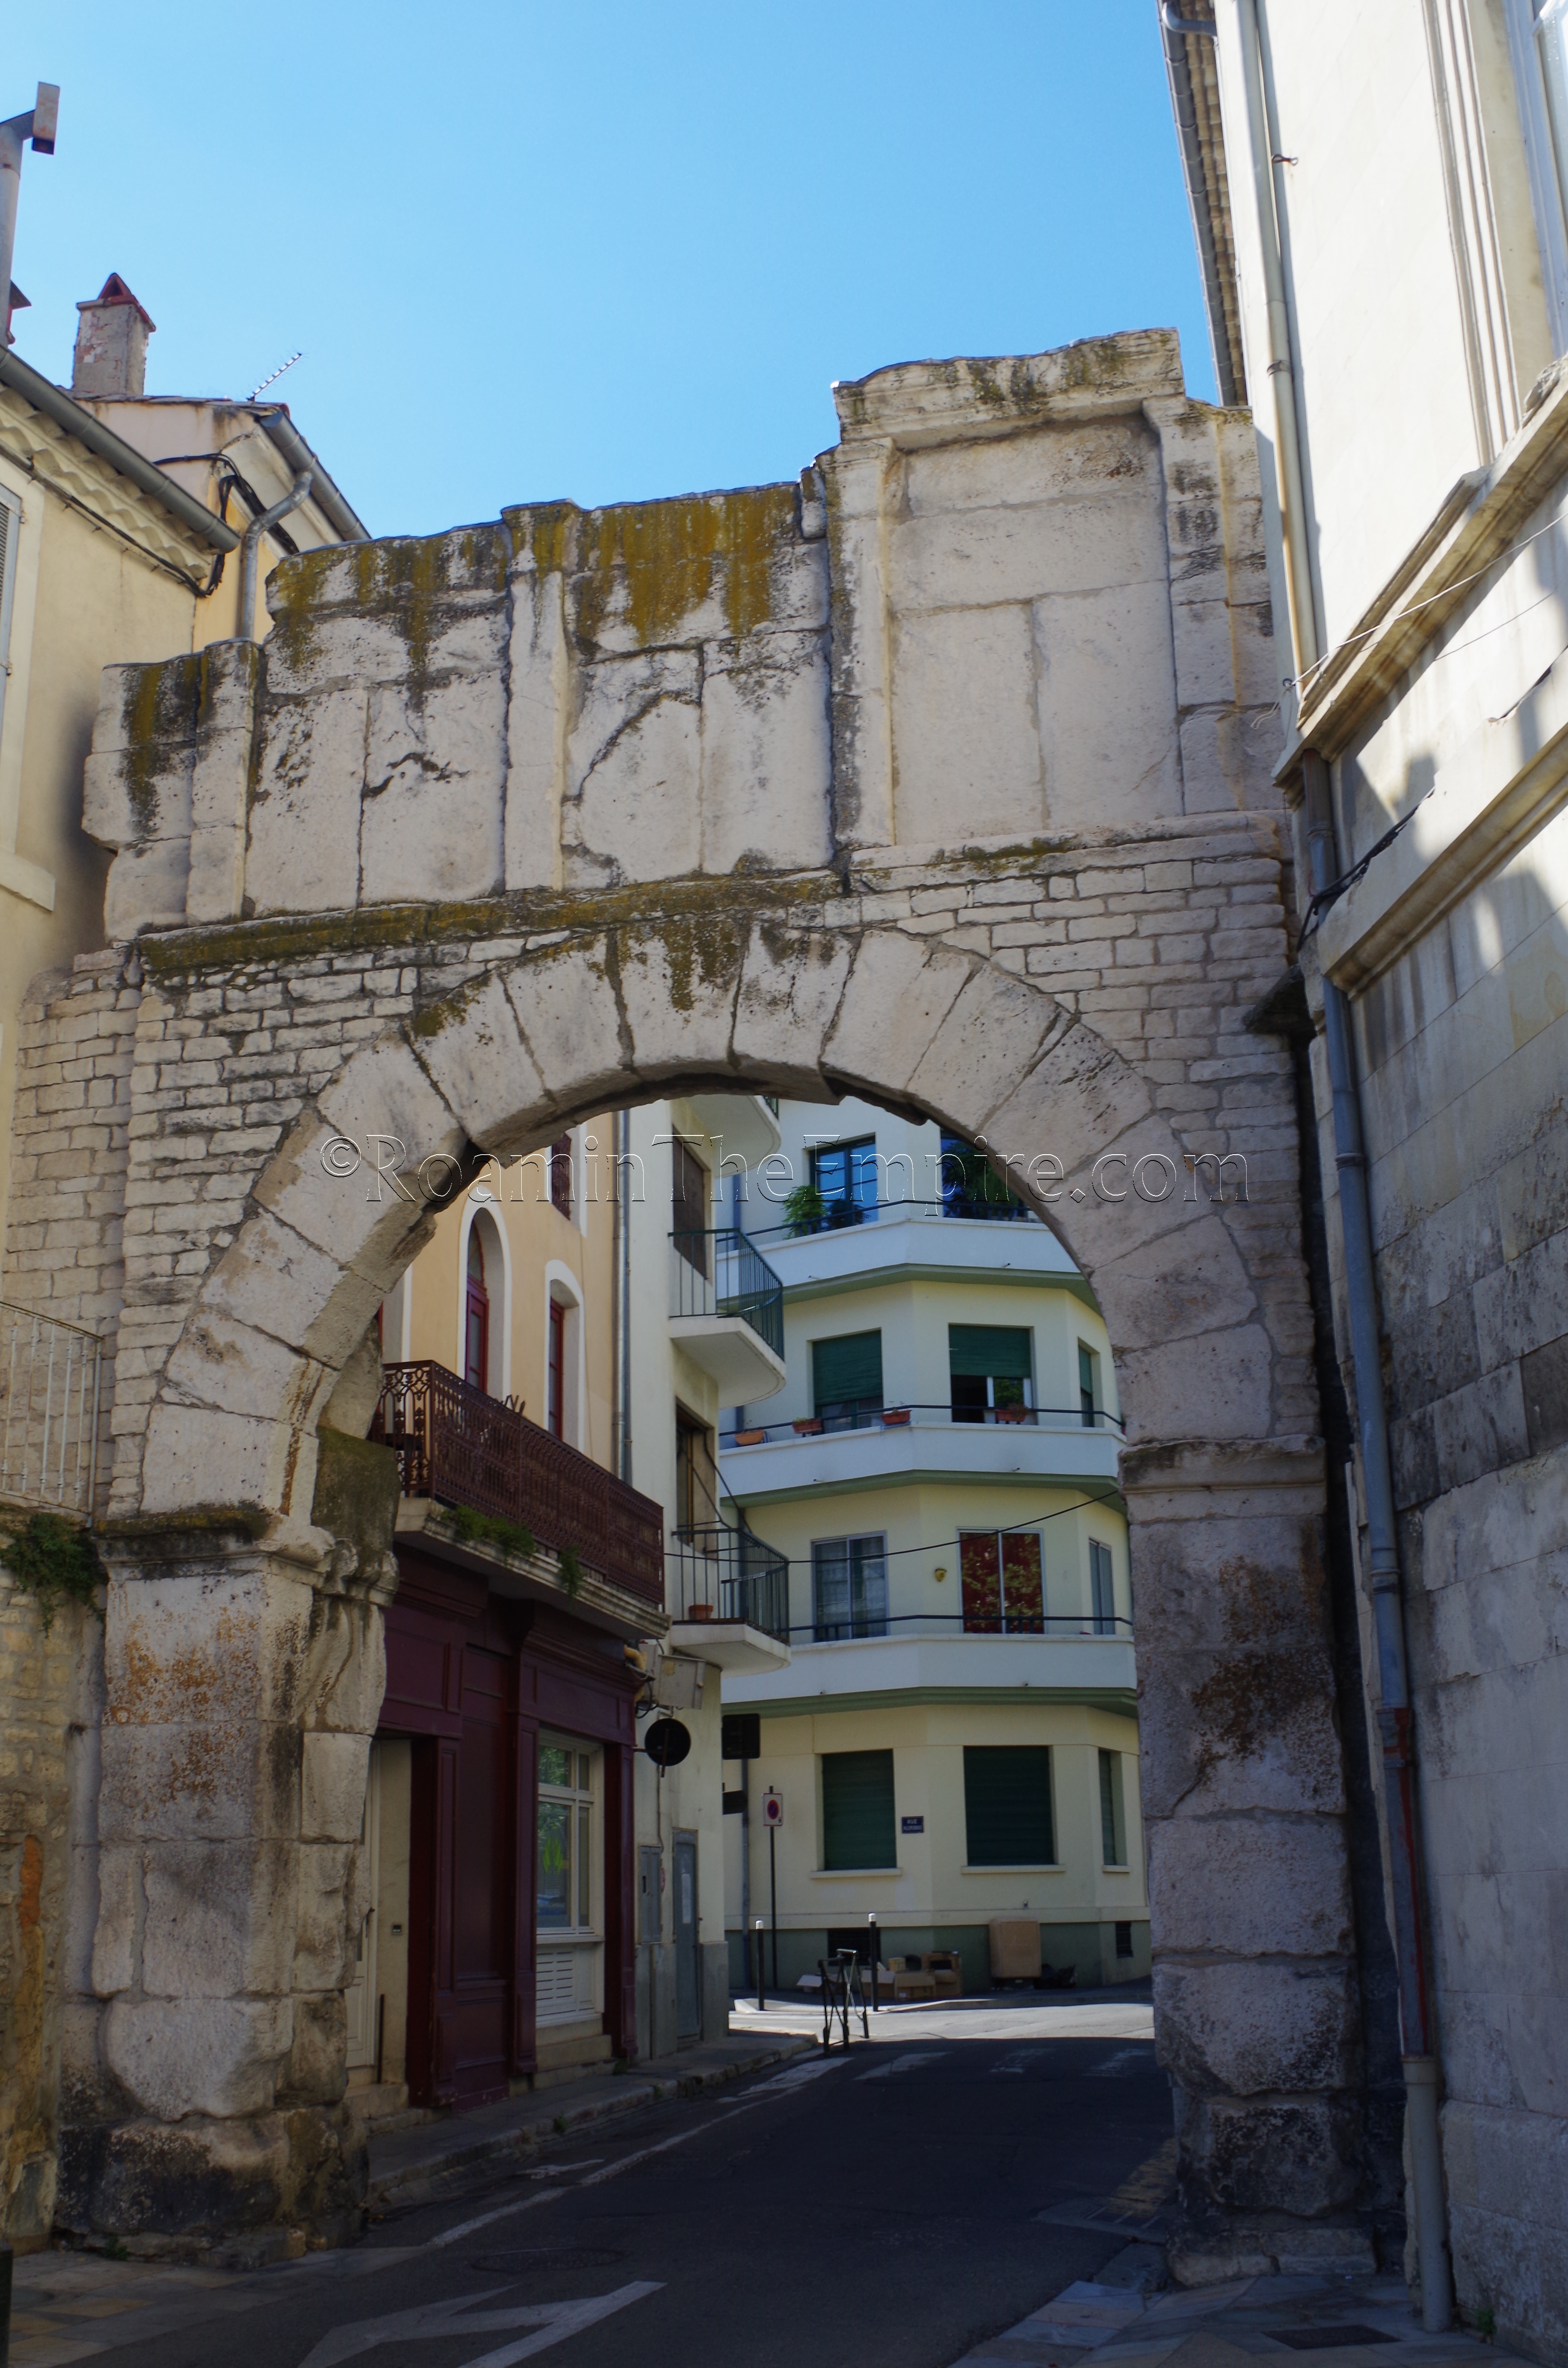 Porte de France. Nemausus. Nîmes.